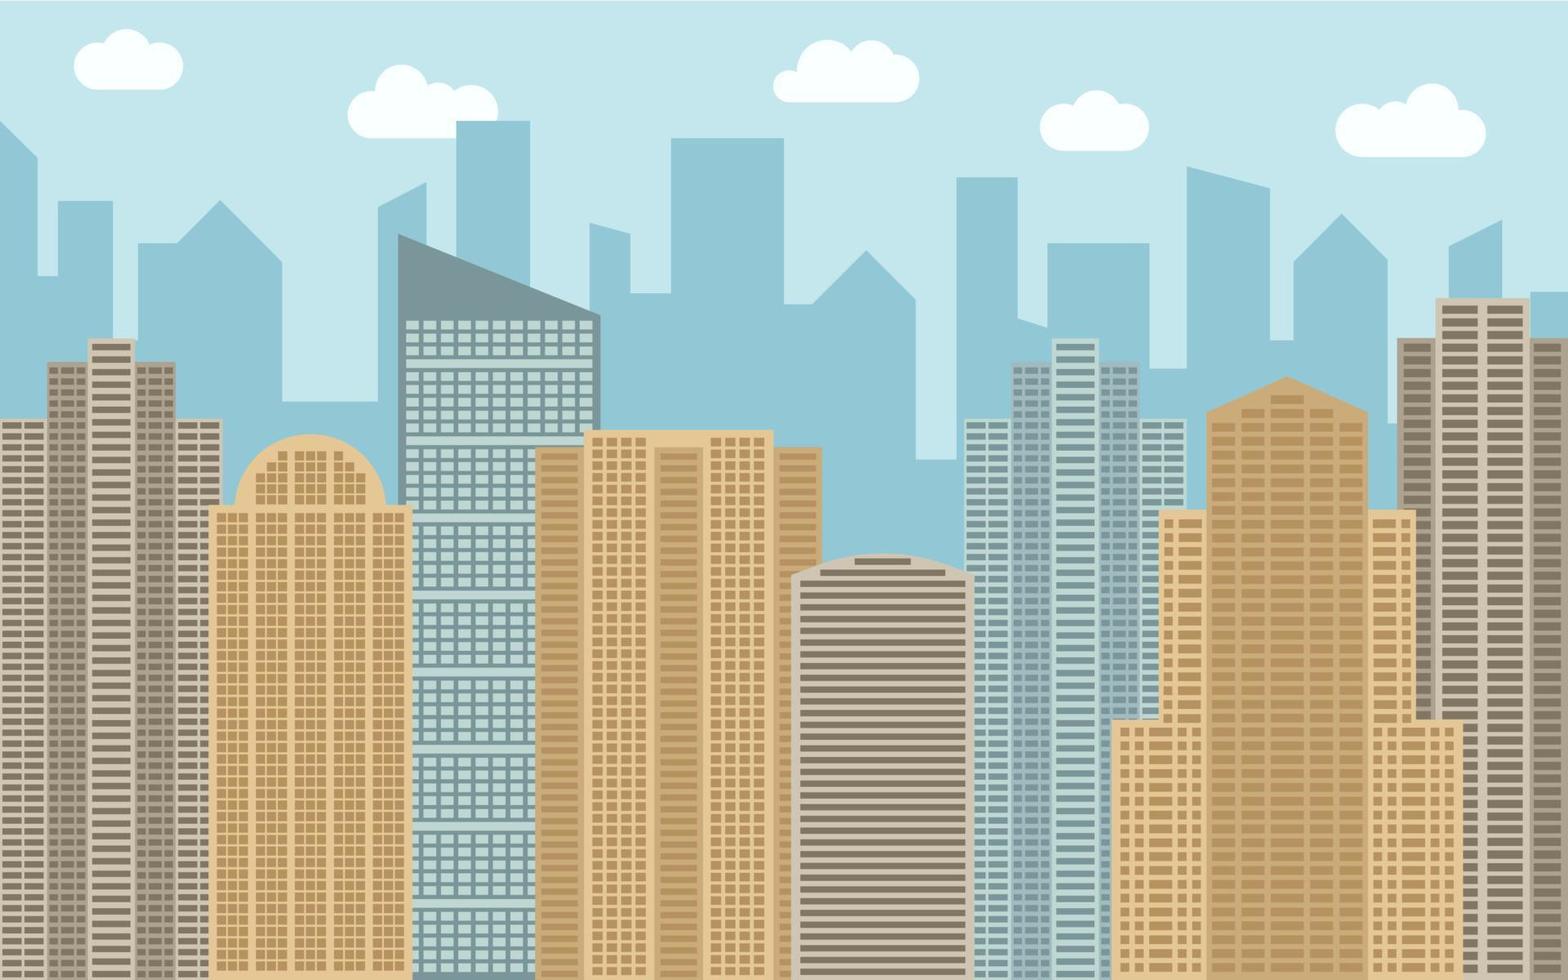 Vektorgrafik der städtischen Landschaft. straßenansicht mit stadtbild, wolkenkratzern und modernen gebäuden am sonnigen tag. Stadtraum im flachen Hintergrundkonzept. vektor